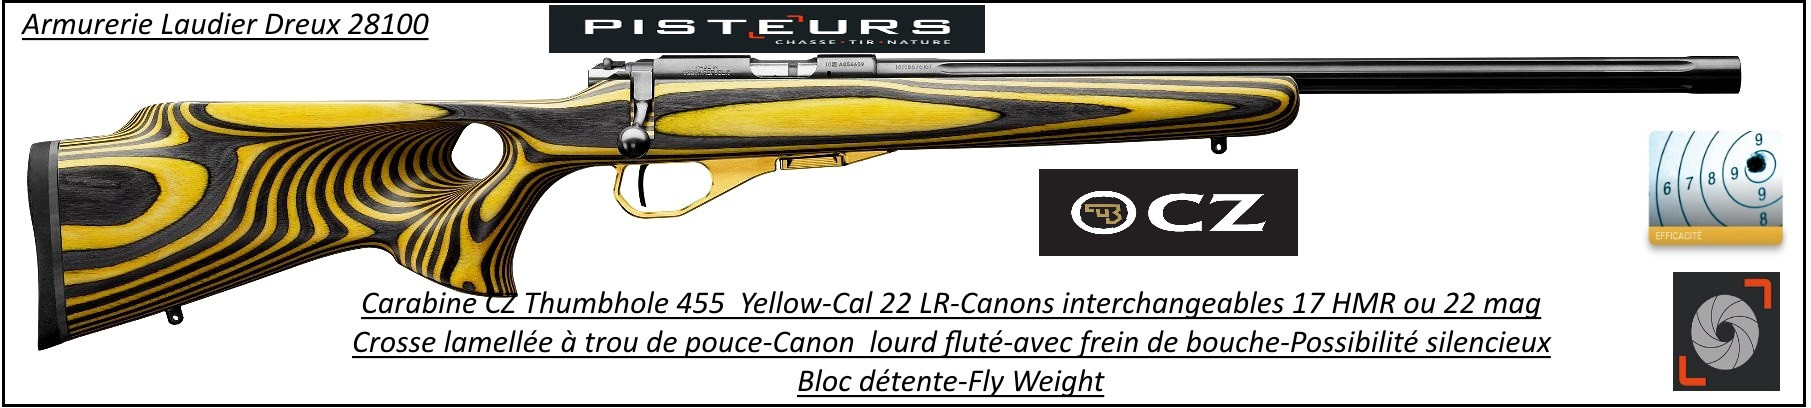 Carabine CZ 455 THUMBOLE yellow Calibre 22 LR Répétition-Promotion- R778687